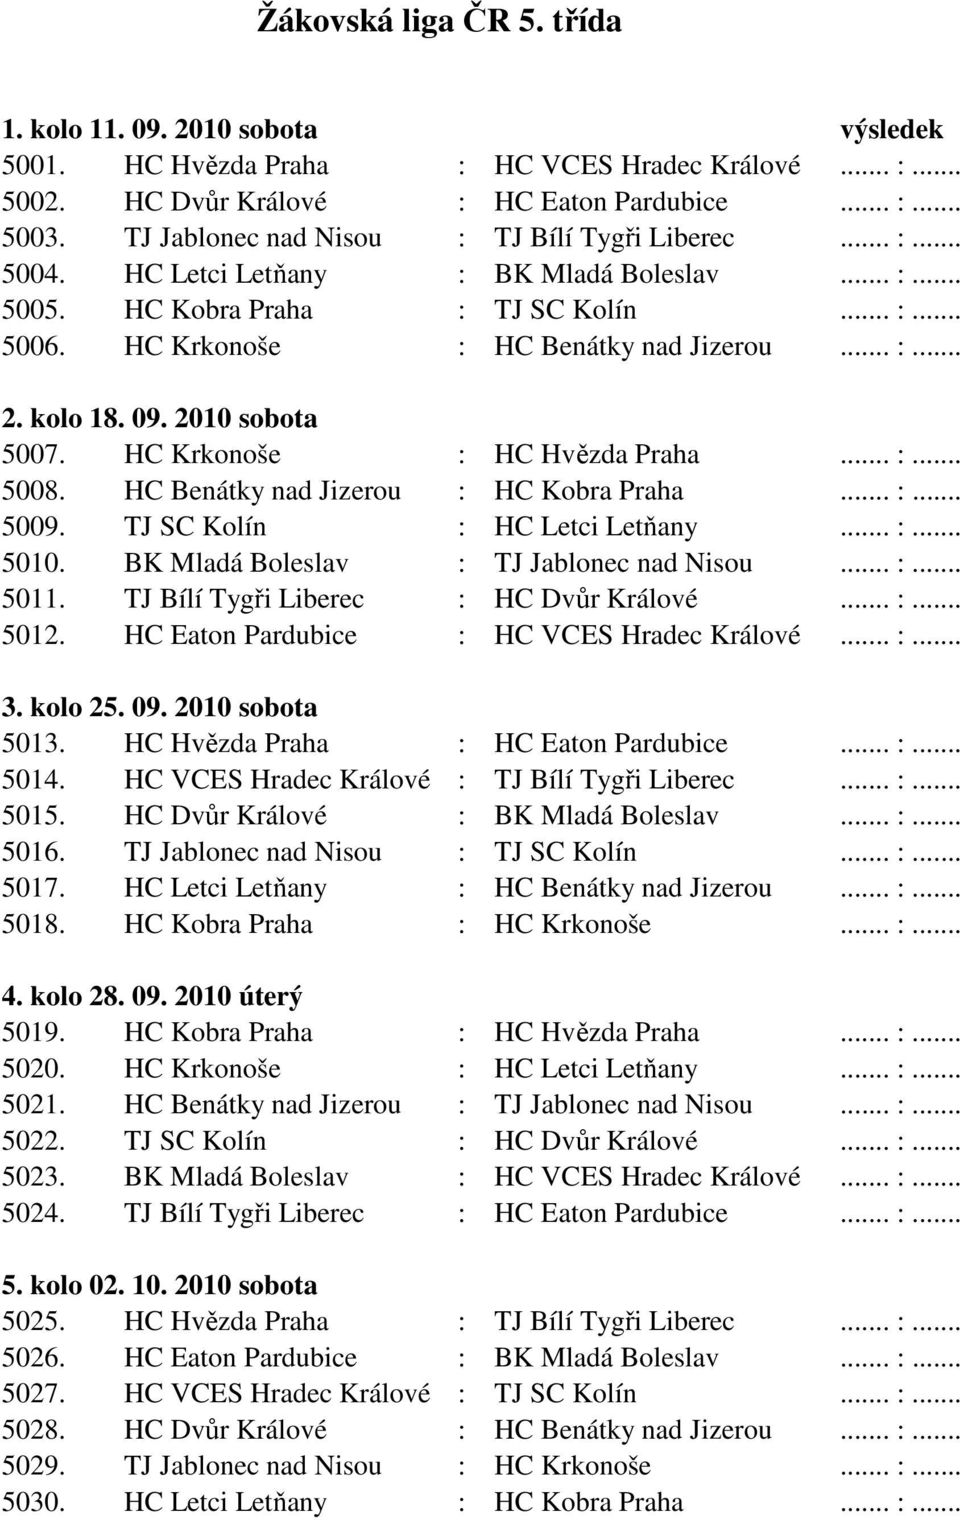 kolo 18. 09. 2010 sobota 5007. HC Krkonoše : HC Hvězda Praha... :... 5008. HC Benátky nad Jizerou : HC Kobra Praha... :... 5009. TJ SC Kolín : HC Letci Letňany... :... 5010.